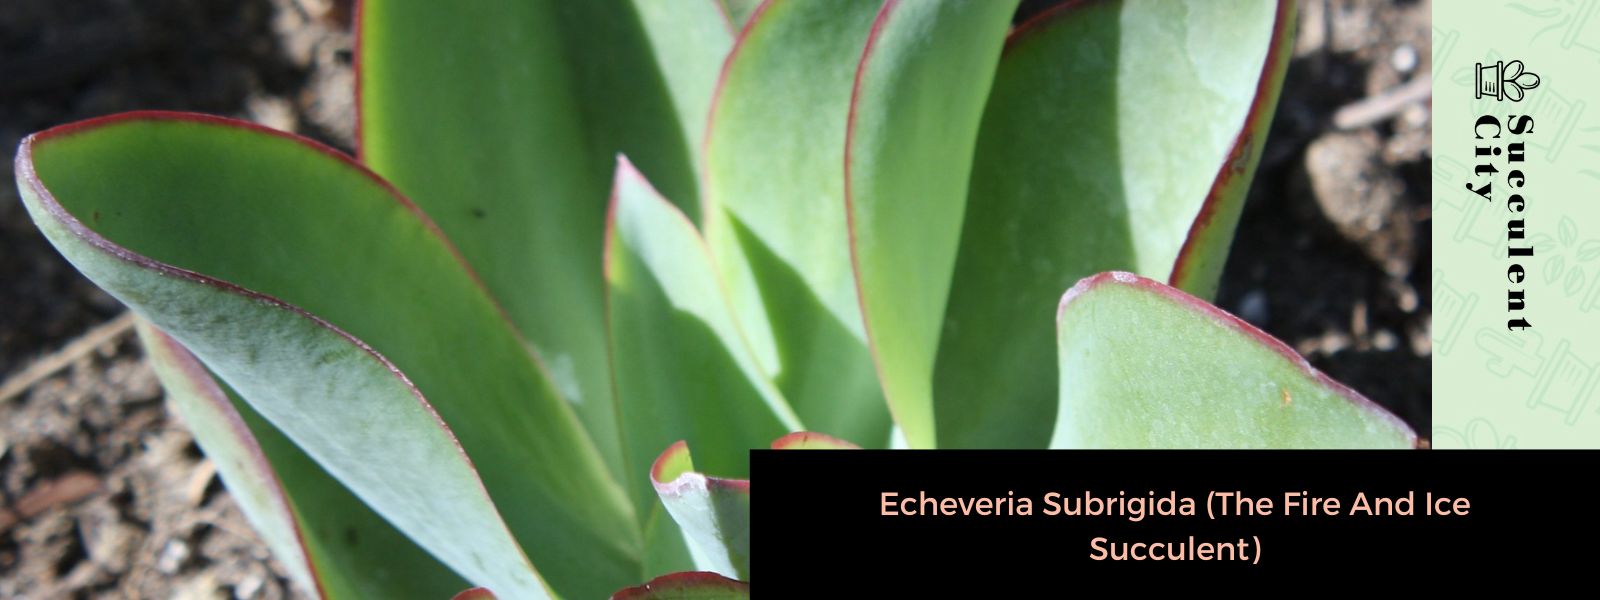 Echeveria Subrigida (La suculenta de fuego y hielo)